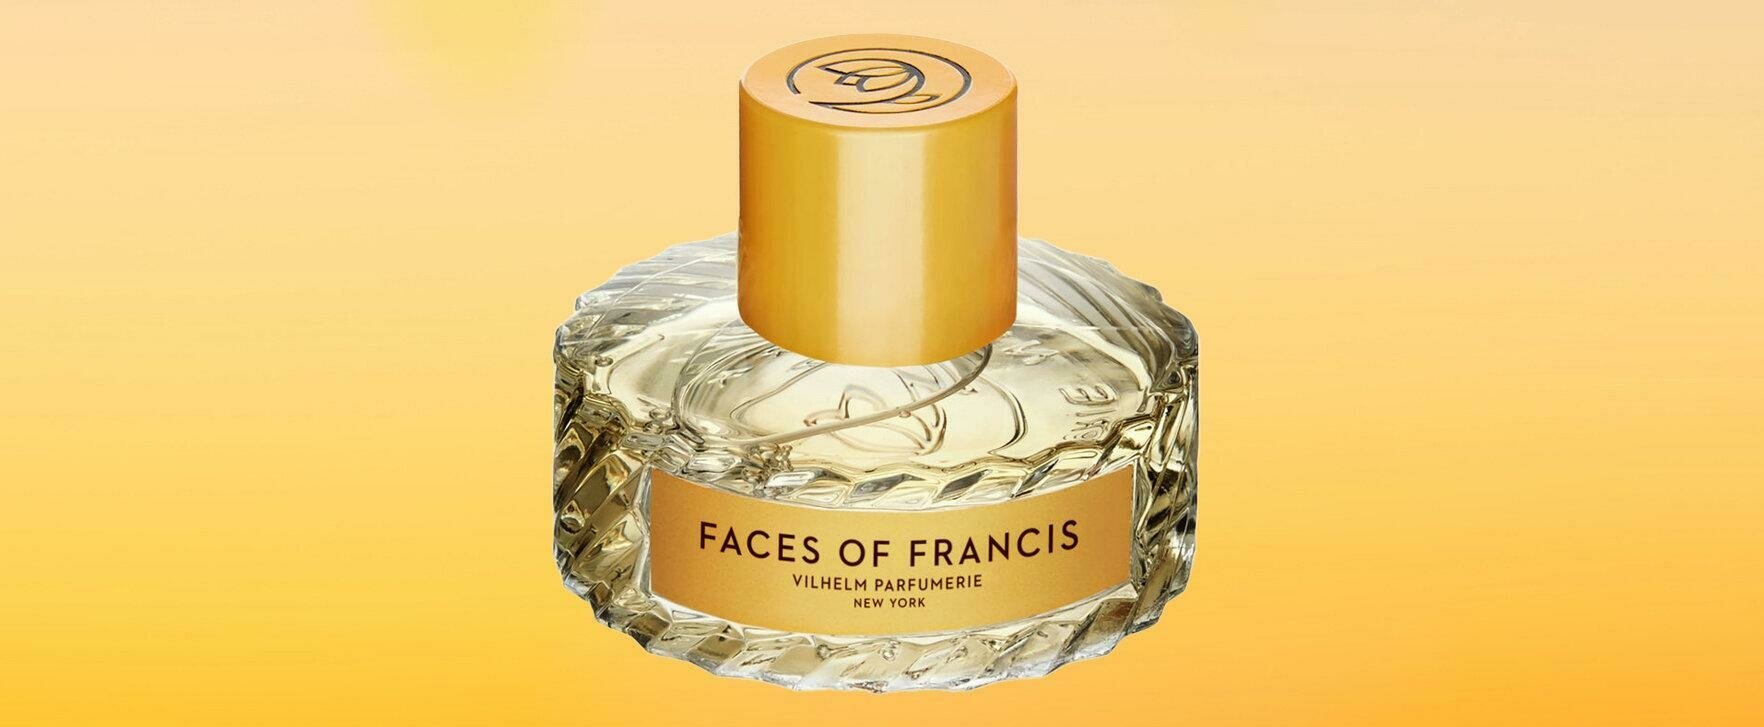 Eine Duftreise durch die Kunst: Vilhelm Parfumerie präsentiert „Faces of Francis“